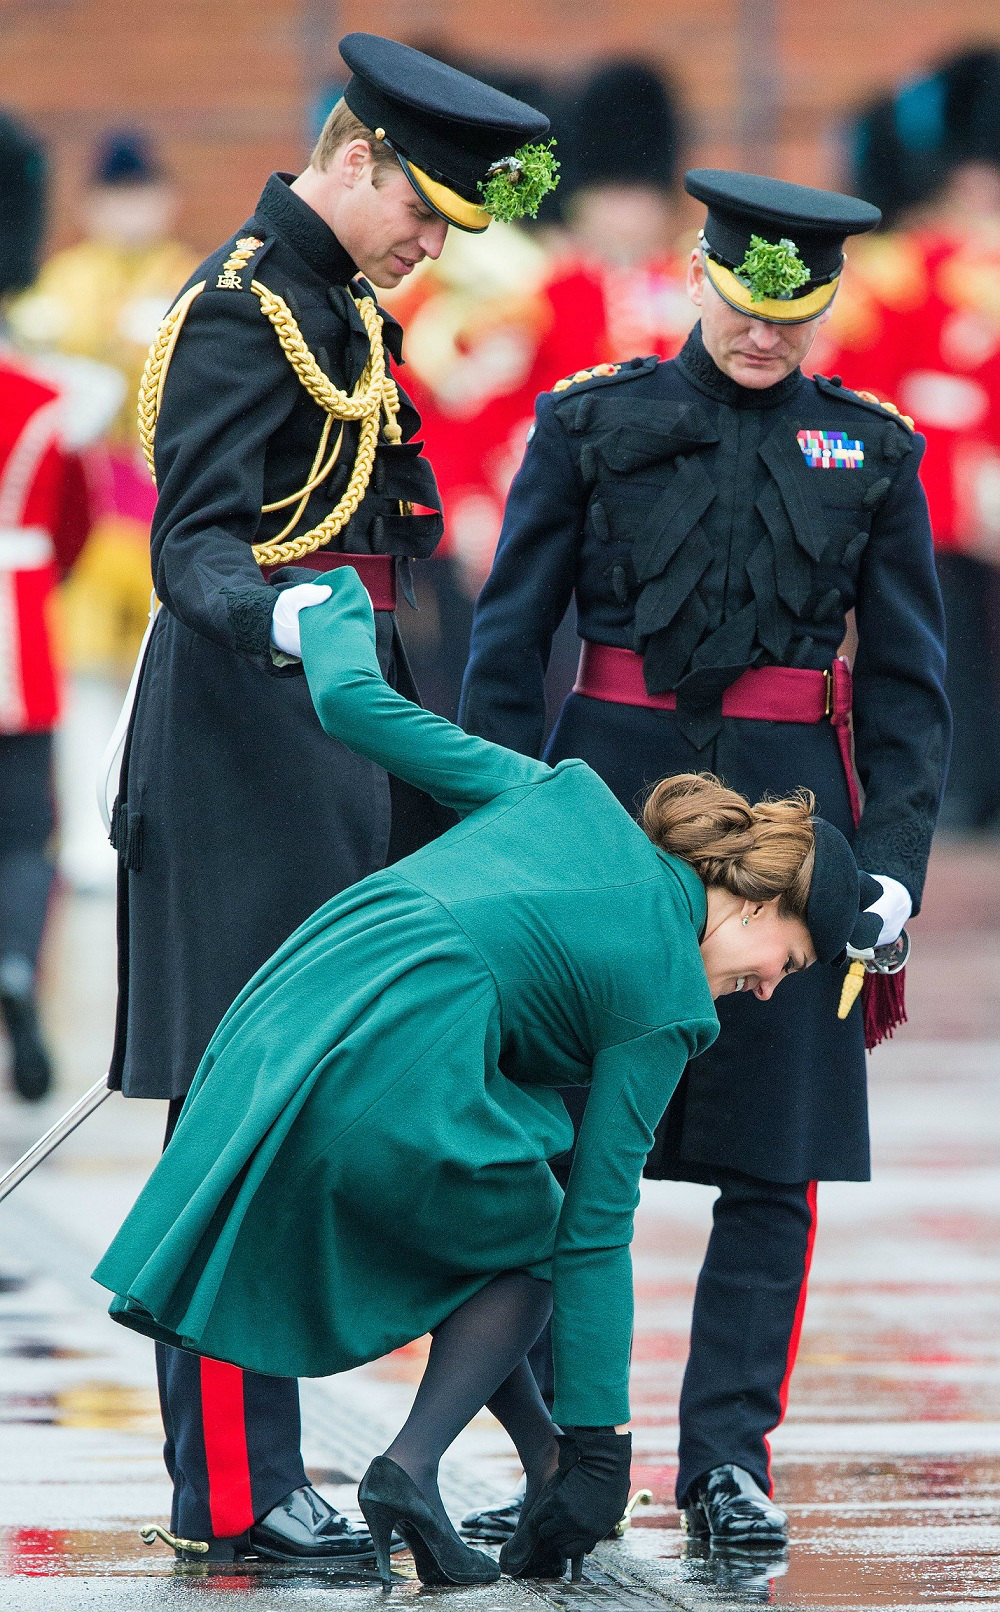 Принц Уильям помогает своей жене на параде в честь Дня Святого Патрика в Олдершоте: в герцогини Кембриджской застрял в решетке каблук, 17 марта 2013 года